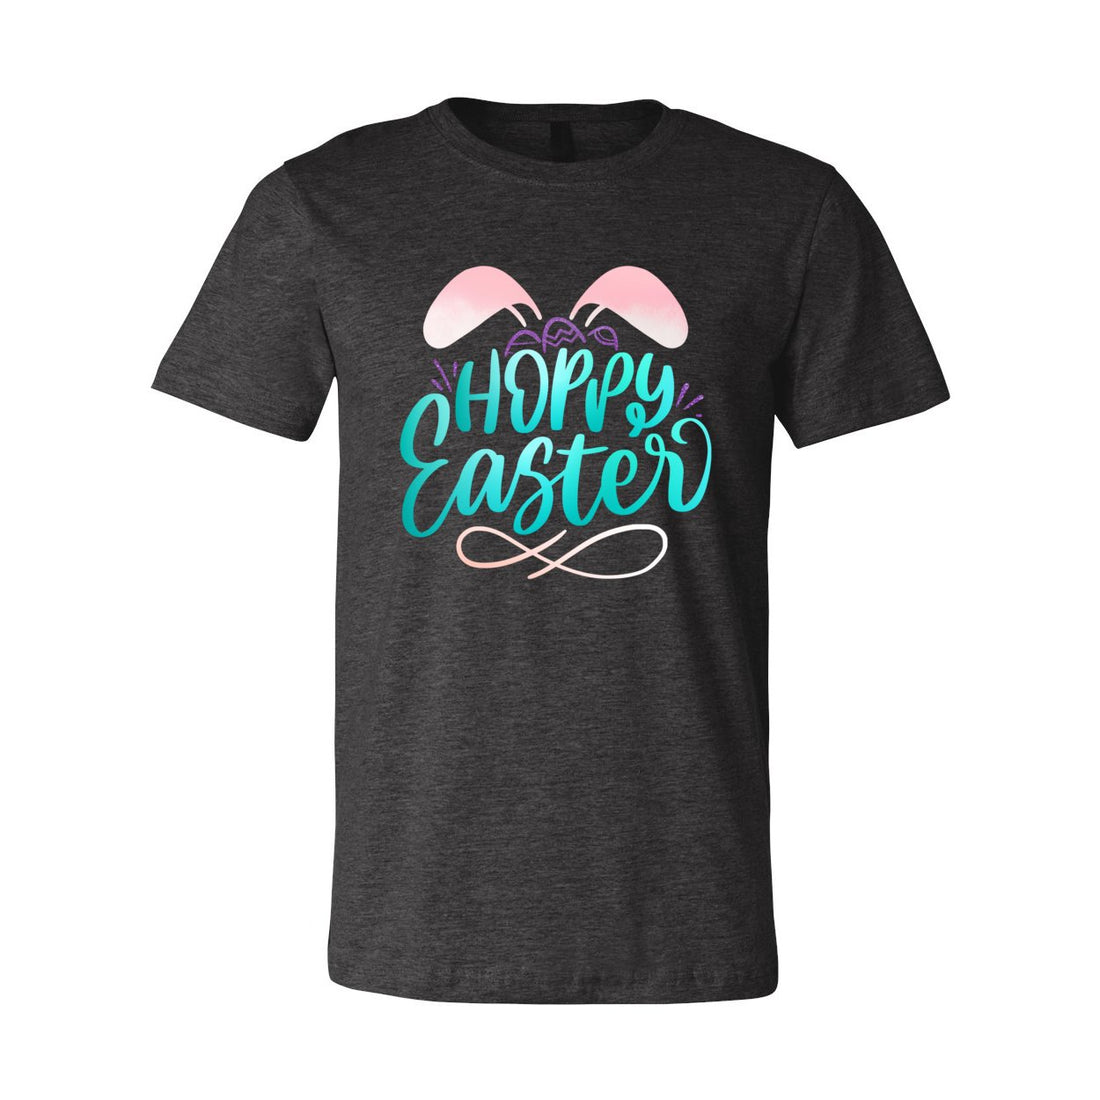 Hoppy Easter Tee - T-Shirts - Positively Sassy - Hoppy Easter Tee